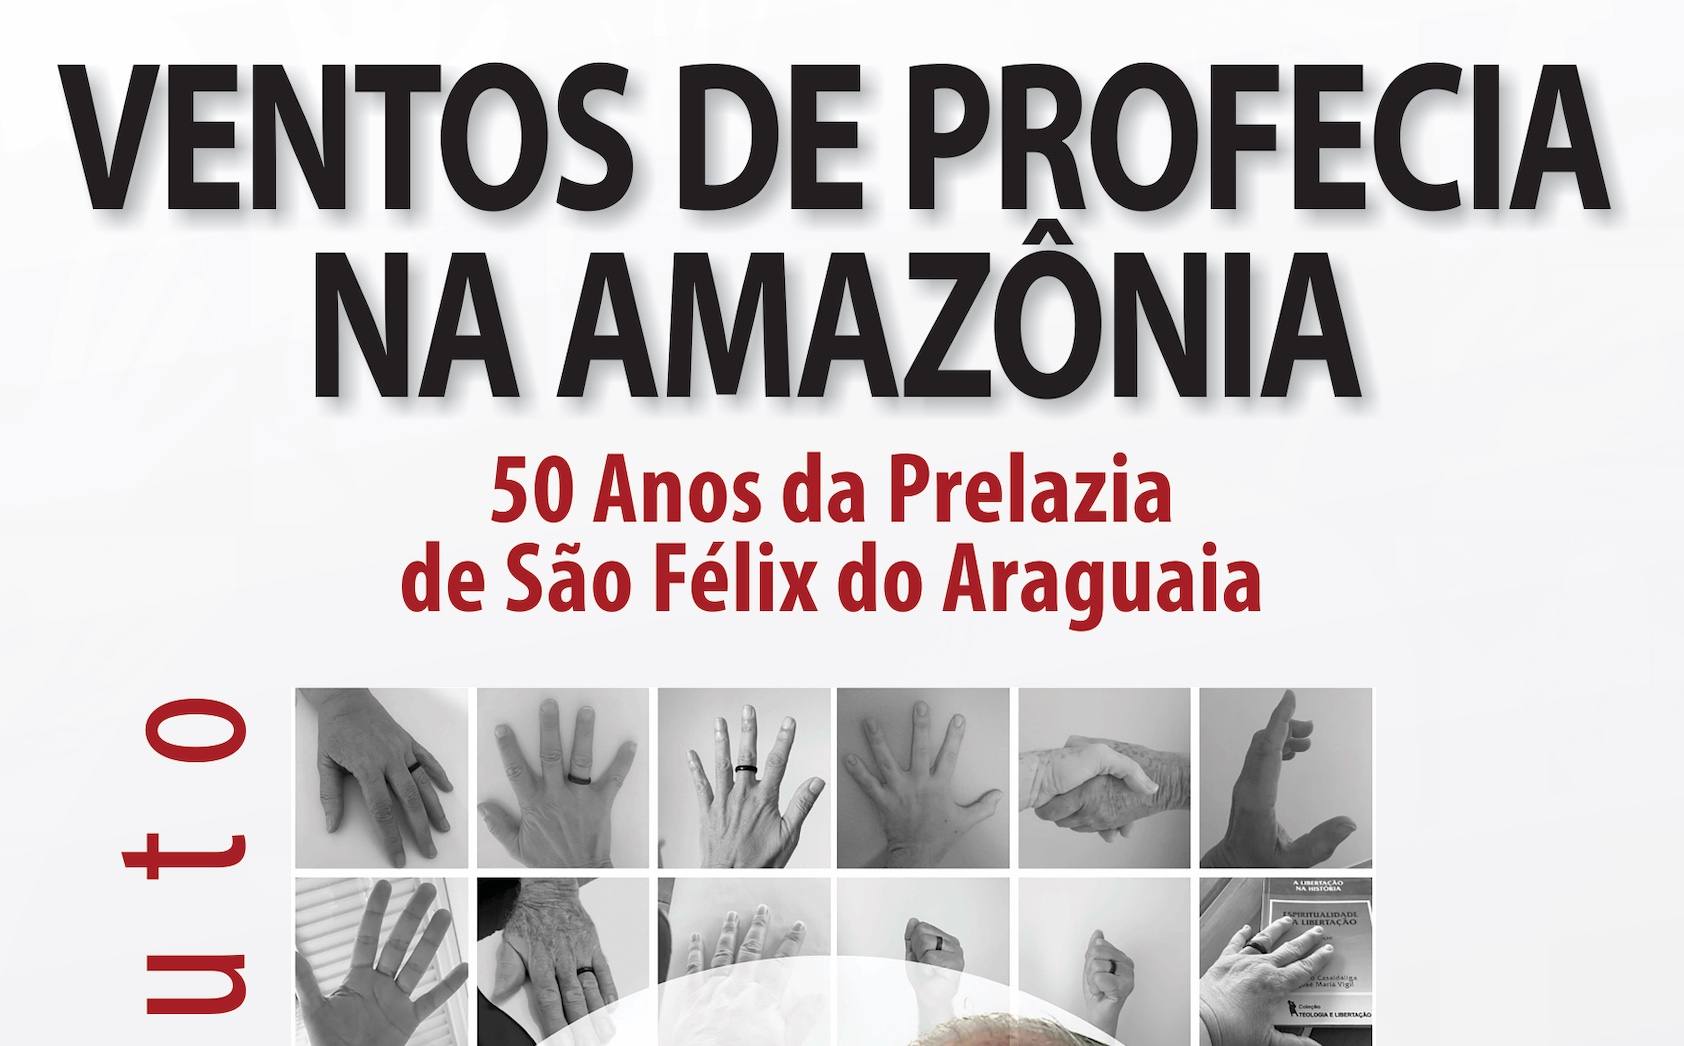 Portada de l'edició brasilera: «Ventos de profecia na Amazônia»